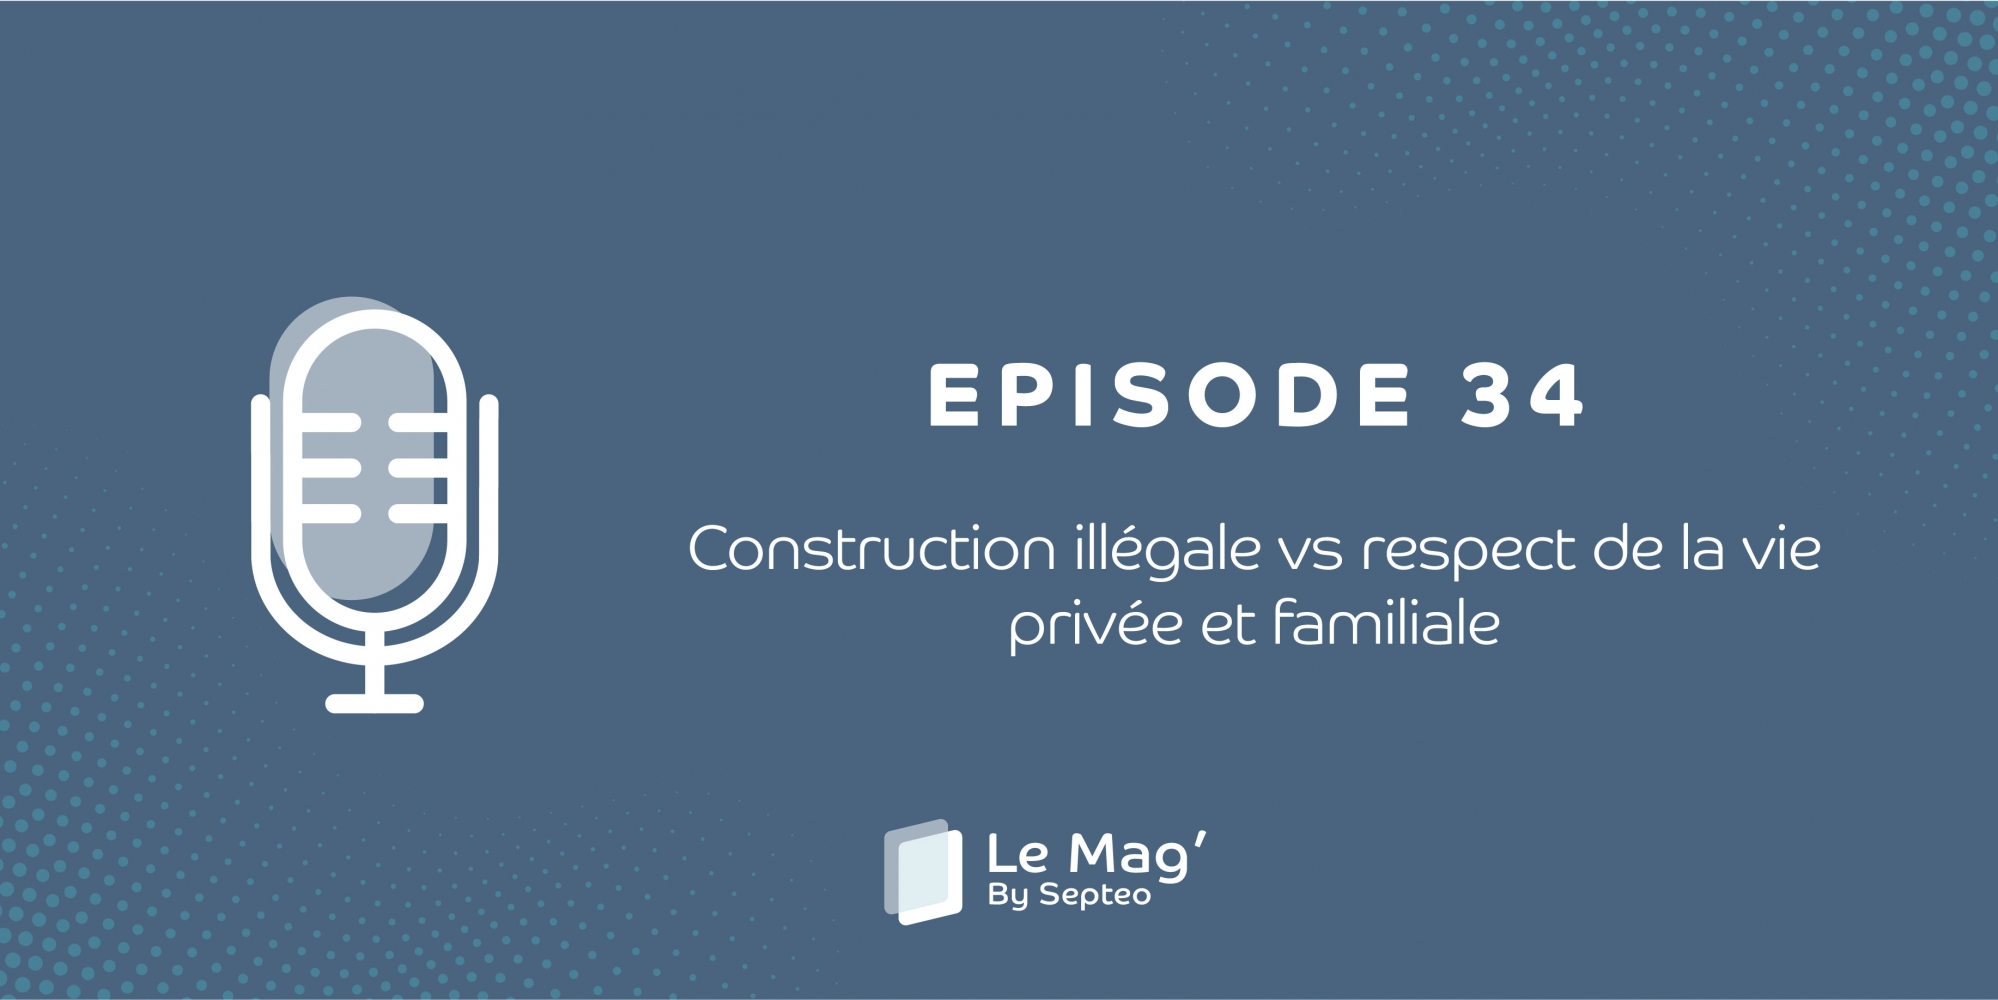 ÉPISODE 34 : Construction illégale vs respect de la vie privée et familiale